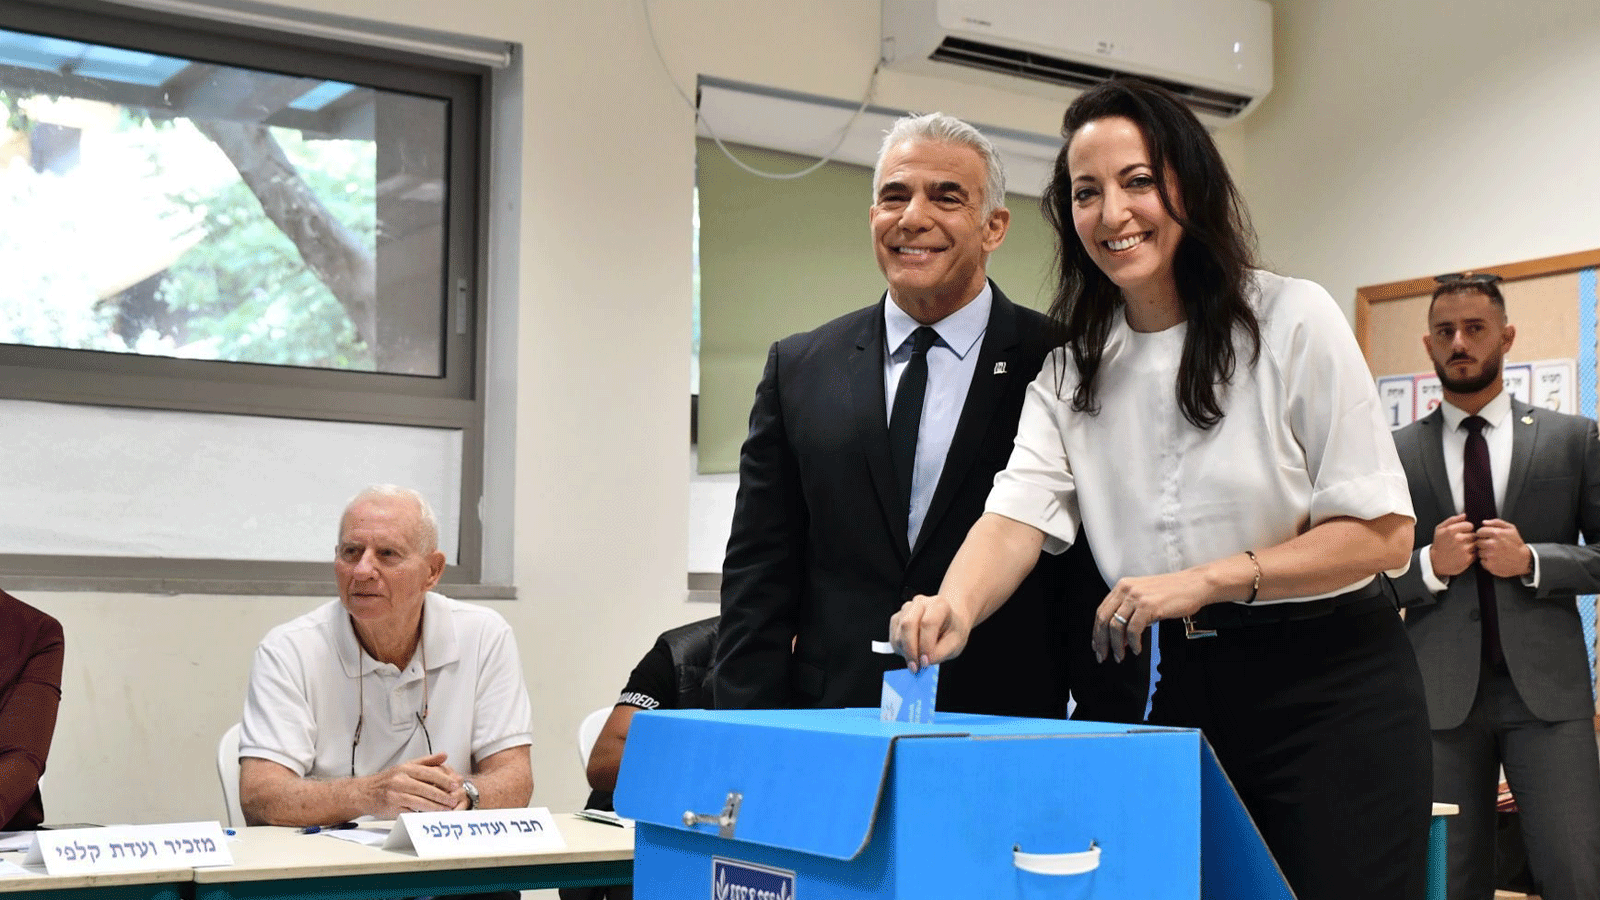 لقطة توثّق عملية اقتراع رئيس الوزراء الإسرائيلي المنتهية ولايته يائير لبيد وزوجته(تويتر)